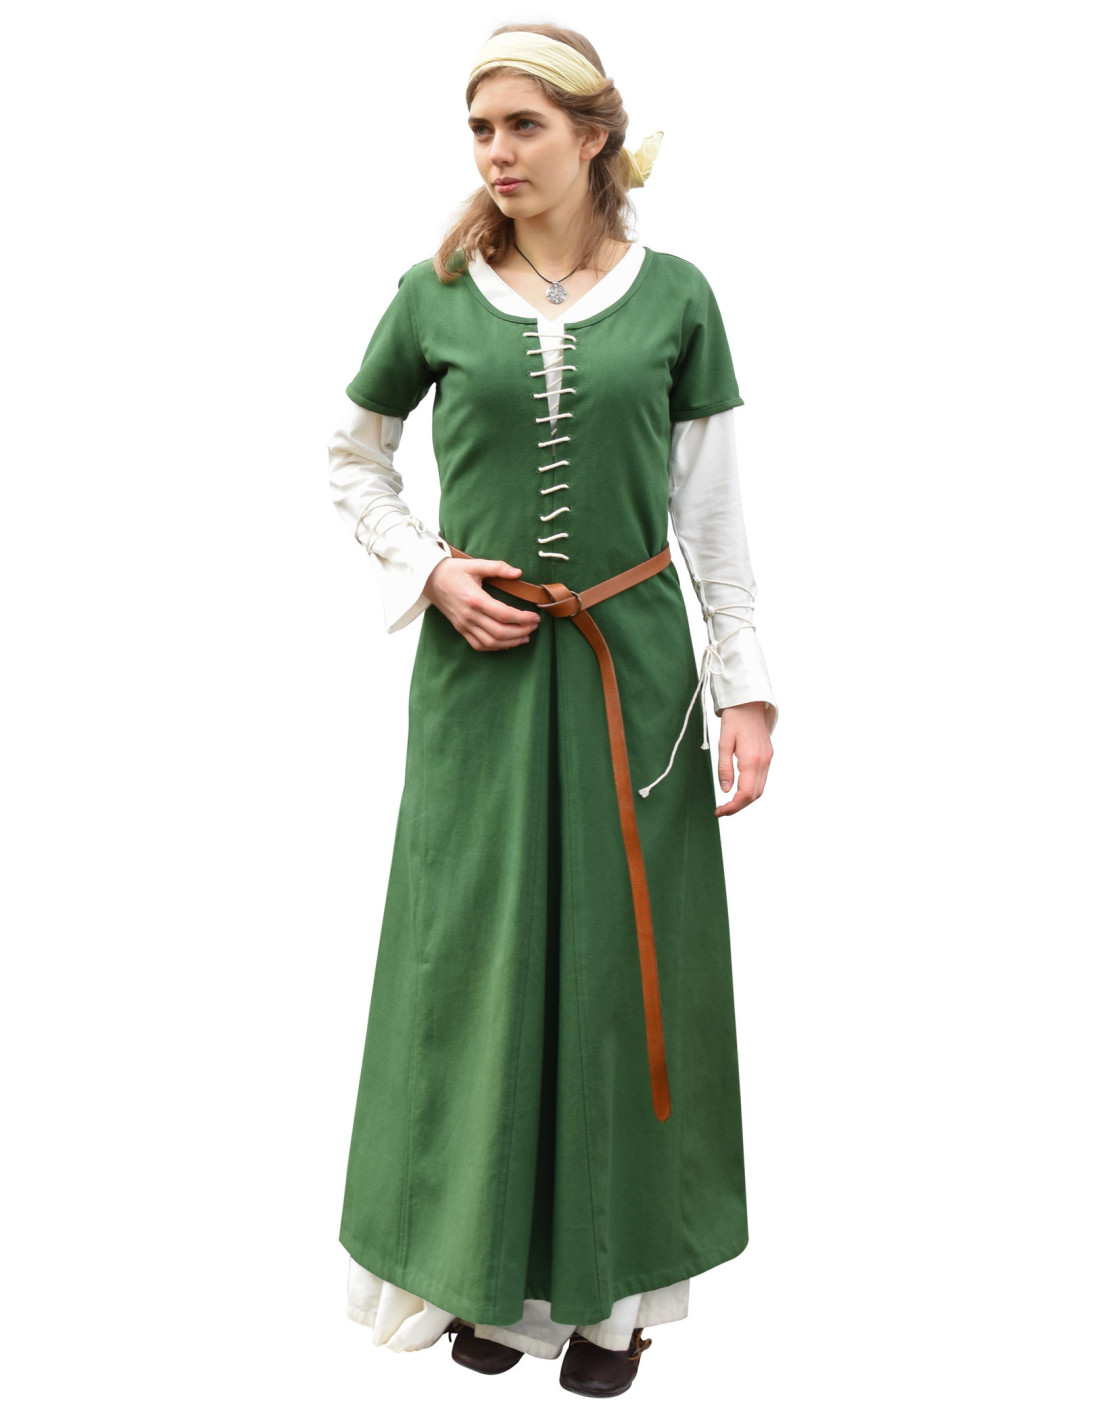 Vestido medieval con mangas de gasa. - El dedal de Eva